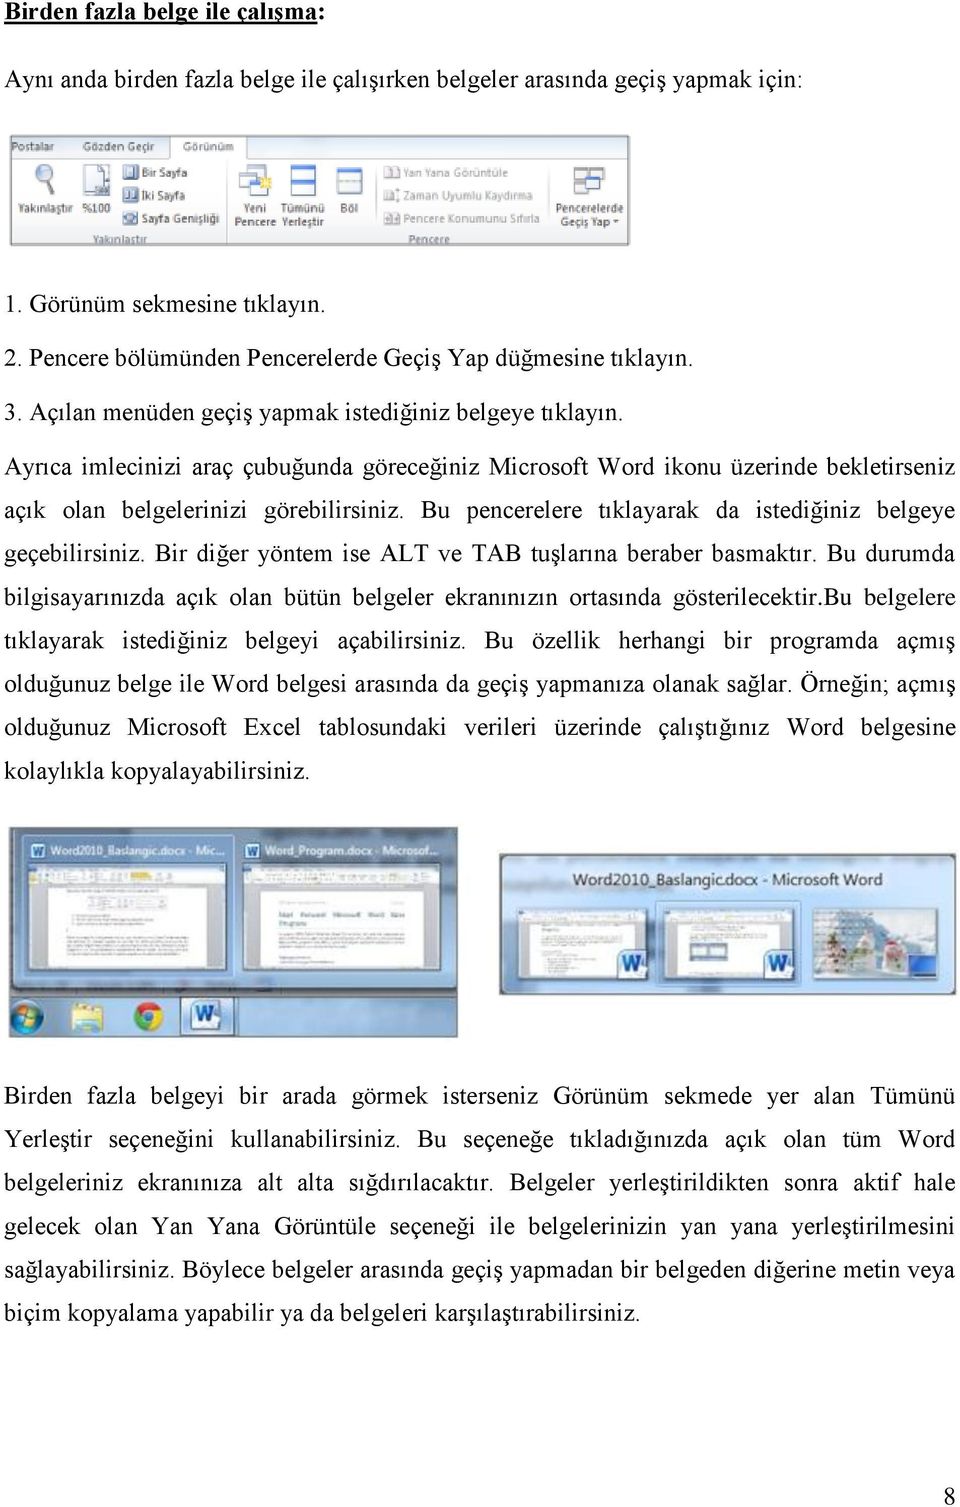 Ayrıca imlecinizi araç çubuğunda göreceğiniz Microsoft Word ikonu üzerinde bekletirseniz açık olan belgelerinizi görebilirsiniz. Bu pencerelere tıklayarak da istediğiniz belgeye geçebilirsiniz.